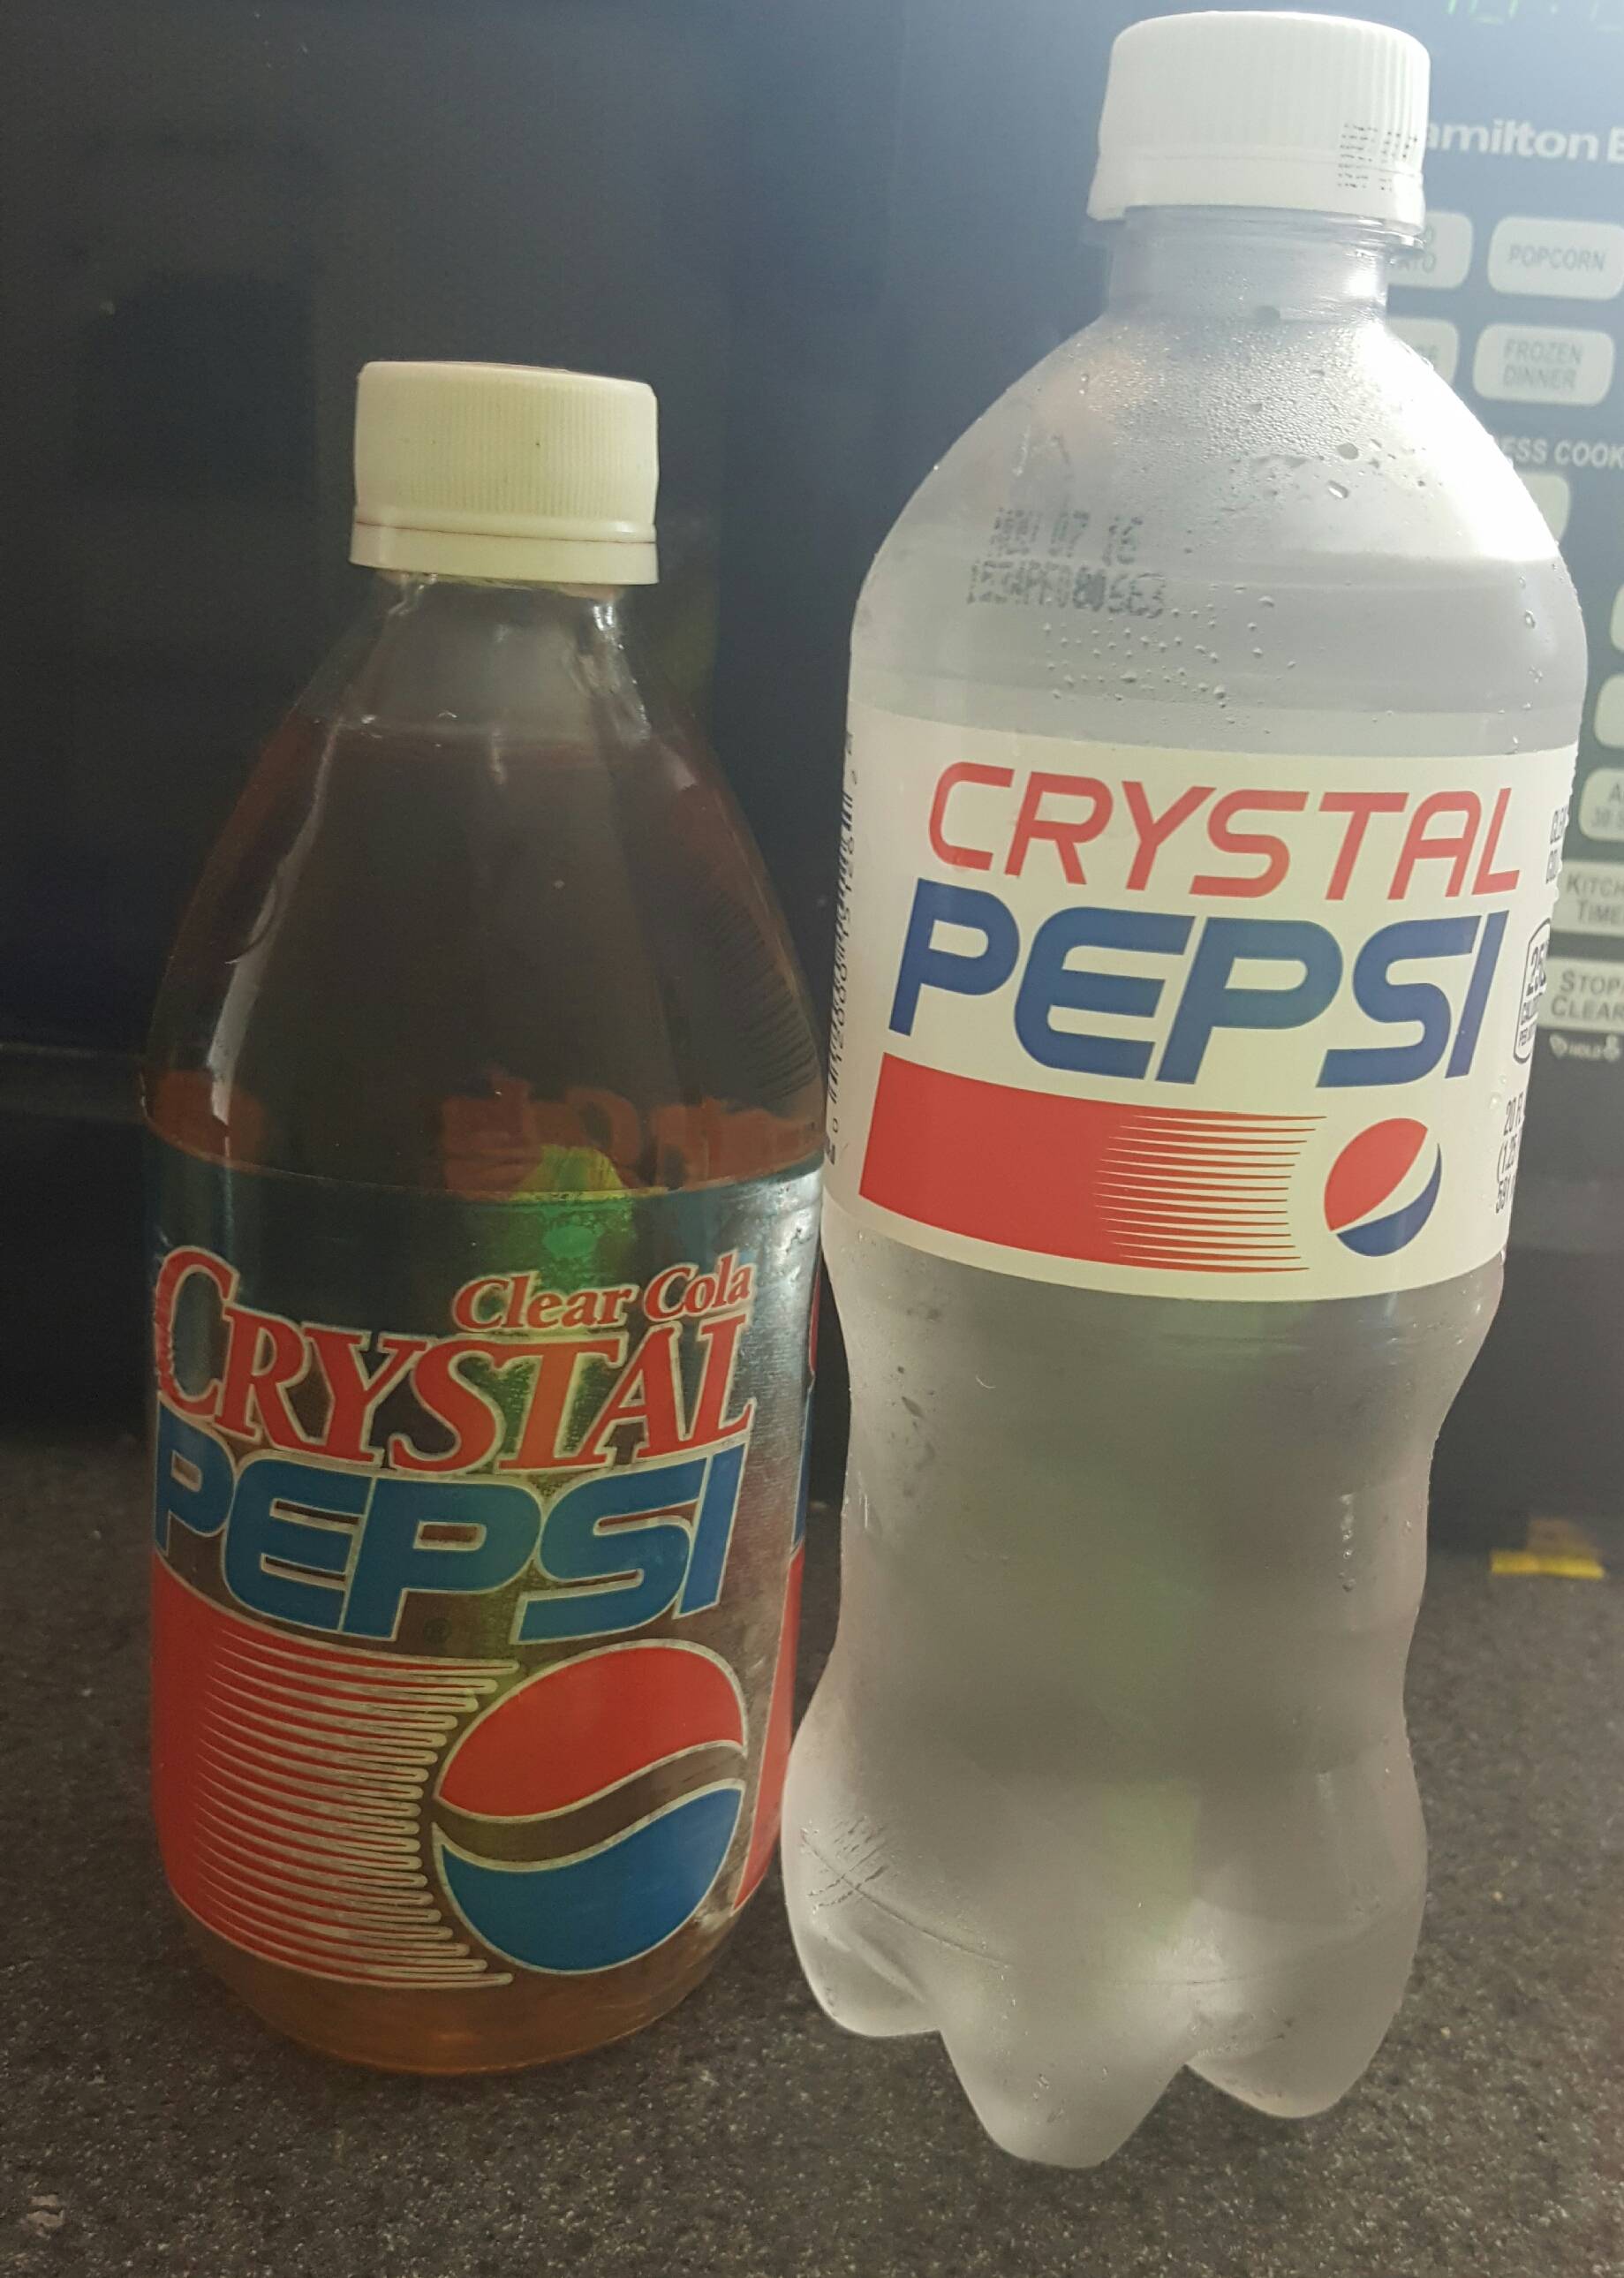 Pepsi Next Logo - Crystal Pepsi next to a 2016 Crystal Pepsi bottle. Somehow